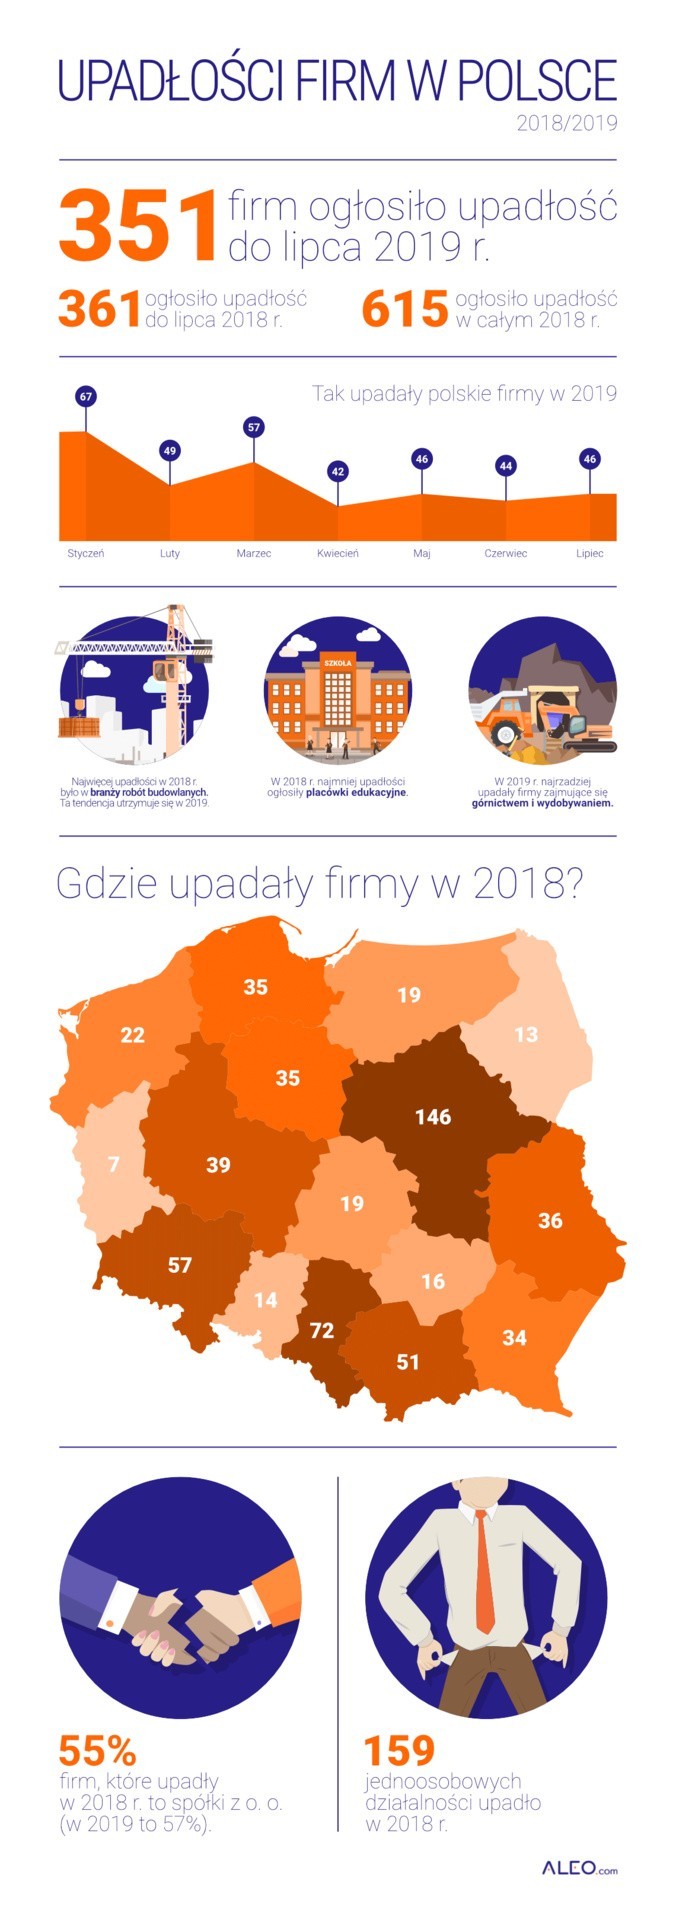 Raport upadłości firm w Polsce. Małopolska w czołówce, w zeszłym roku upadło 51 firm. Jakie są główne powody?